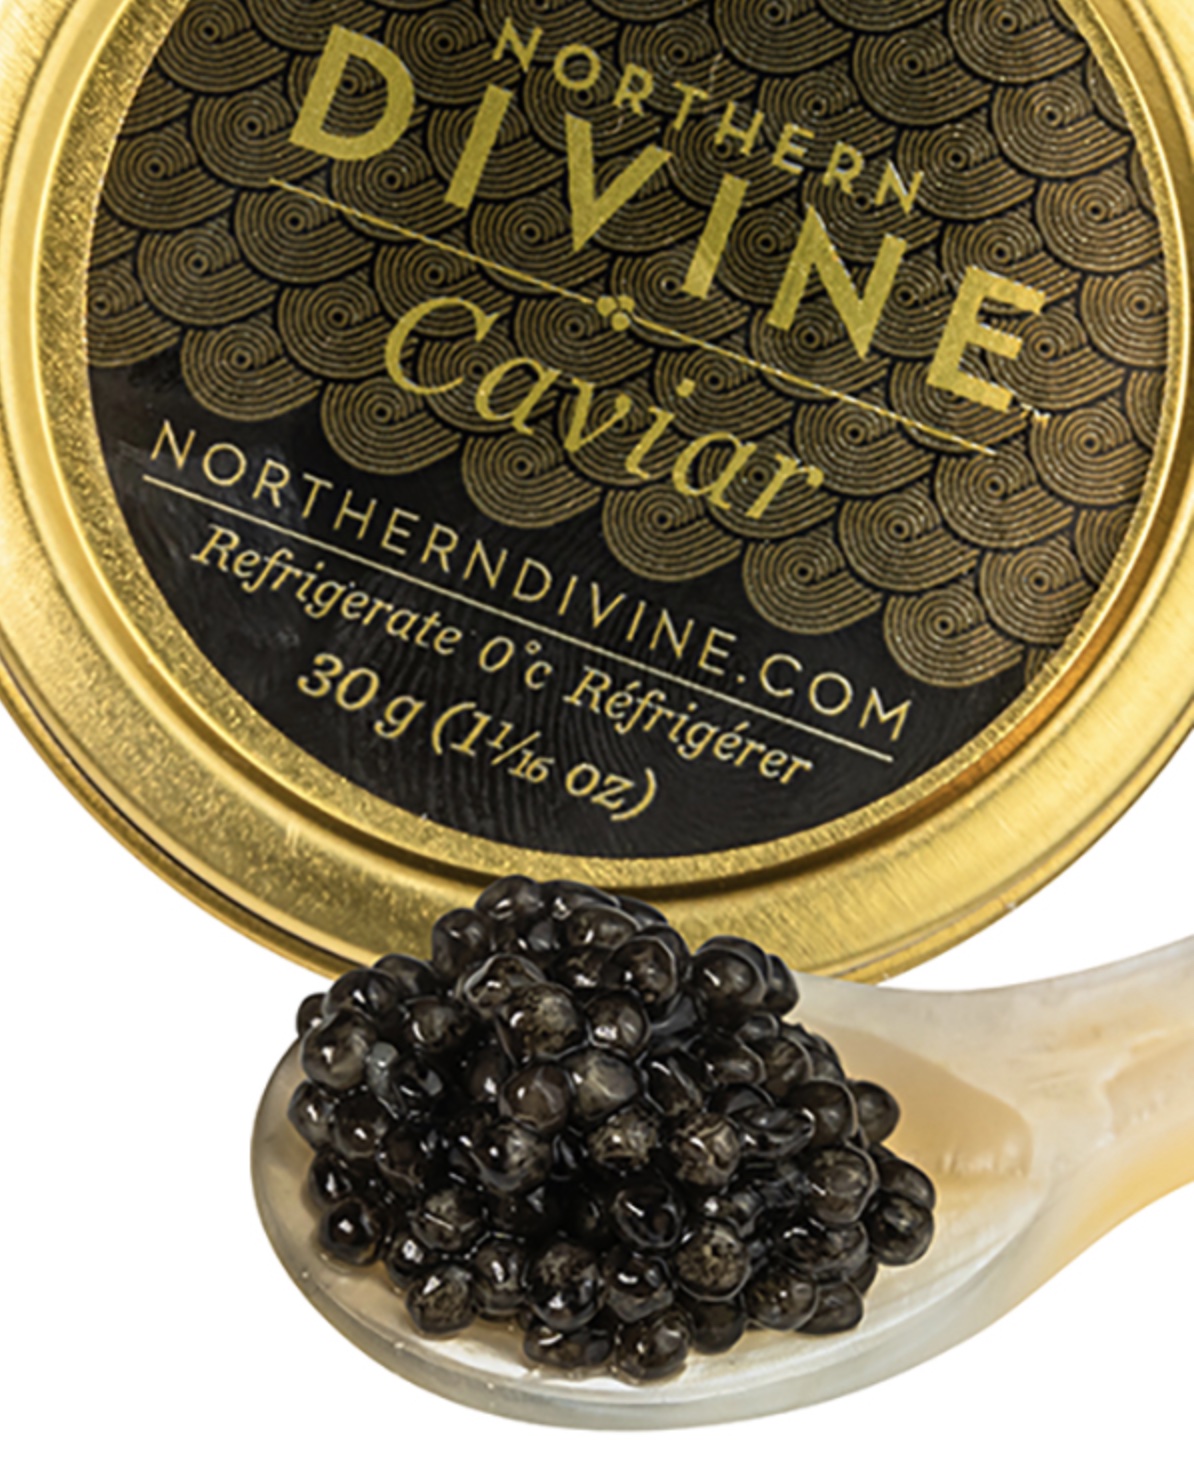 Northern Divine caviar.